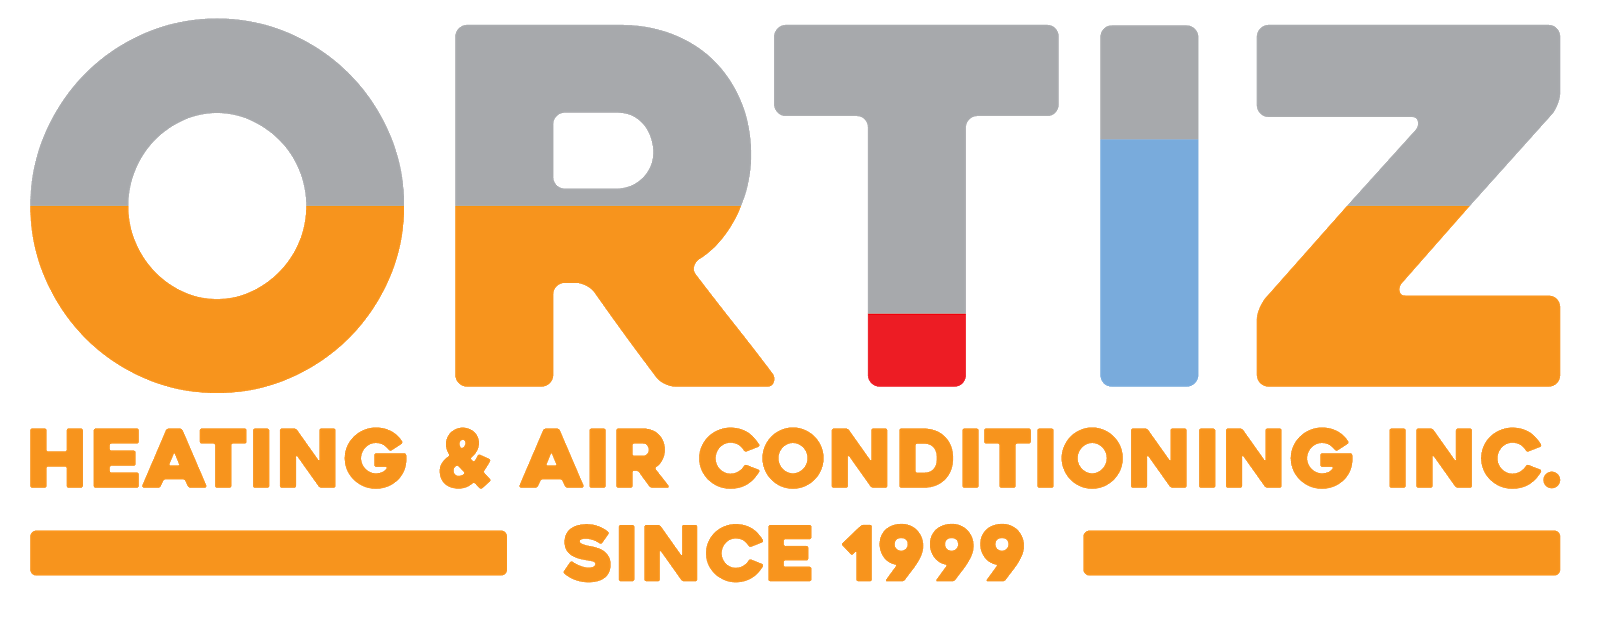 Ortiz Heating & Air Conditioning Inc.